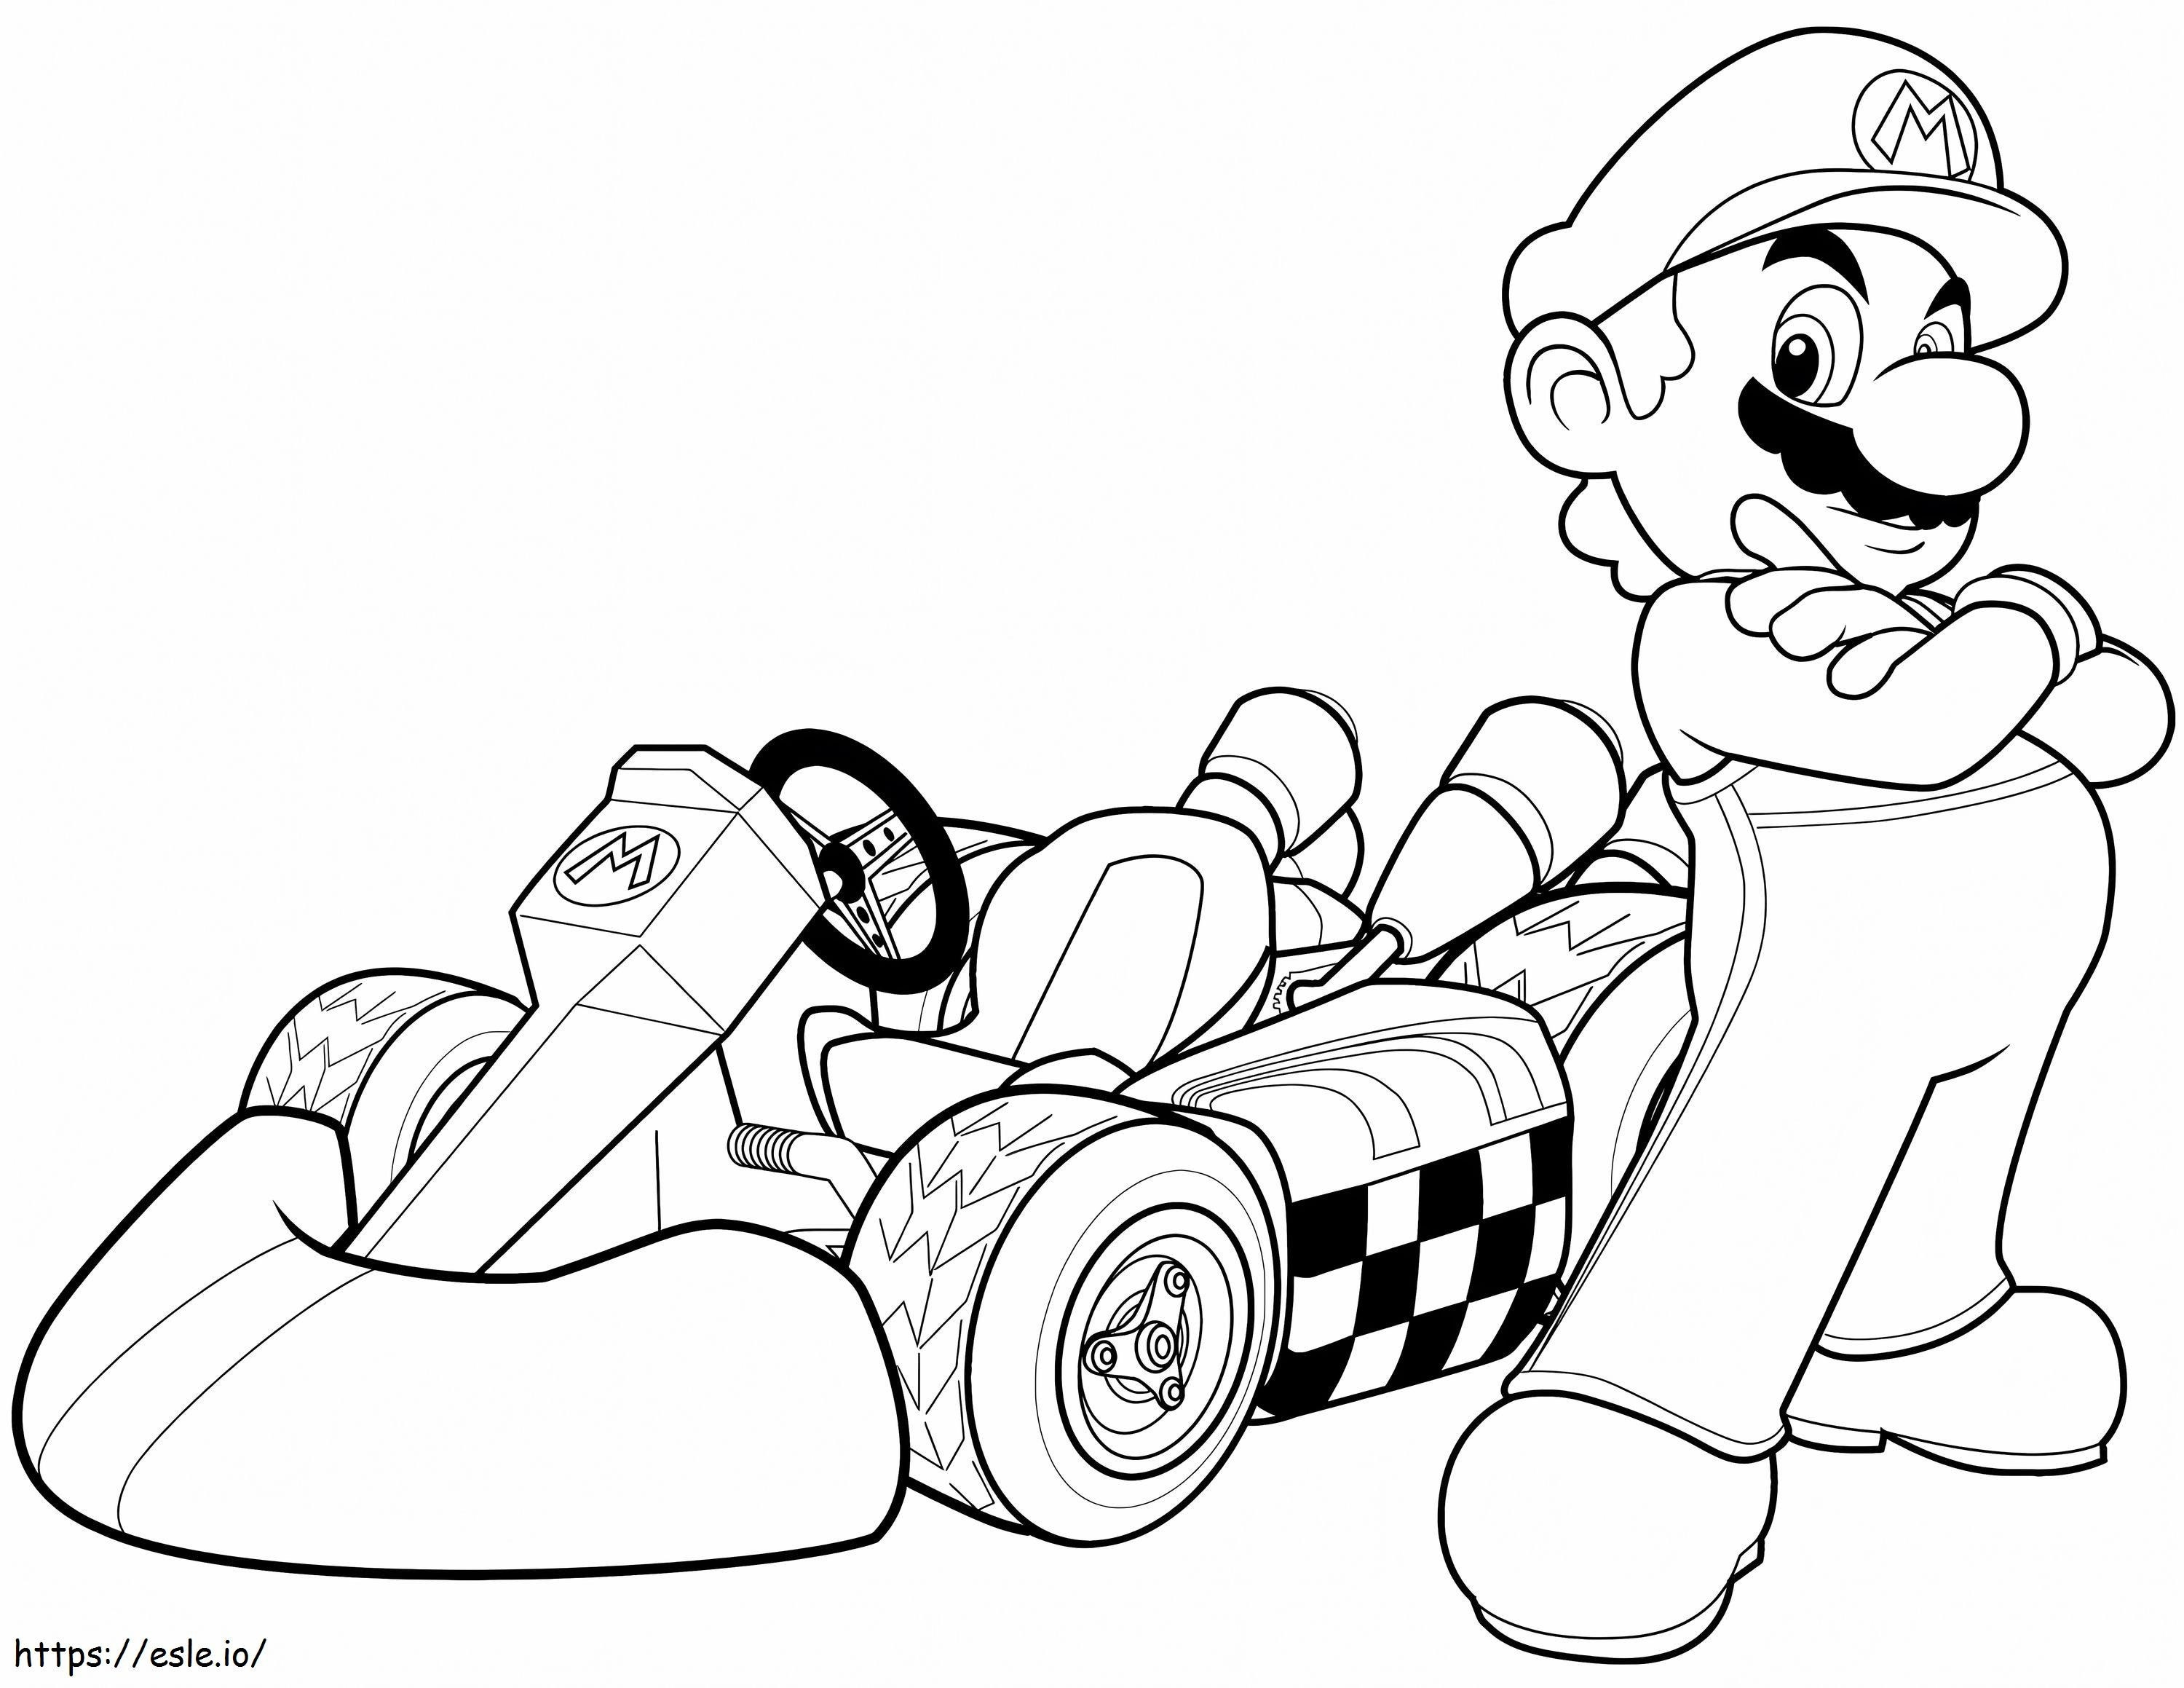  Mario in Mario Kart Wii kleurplaat kleurplaat